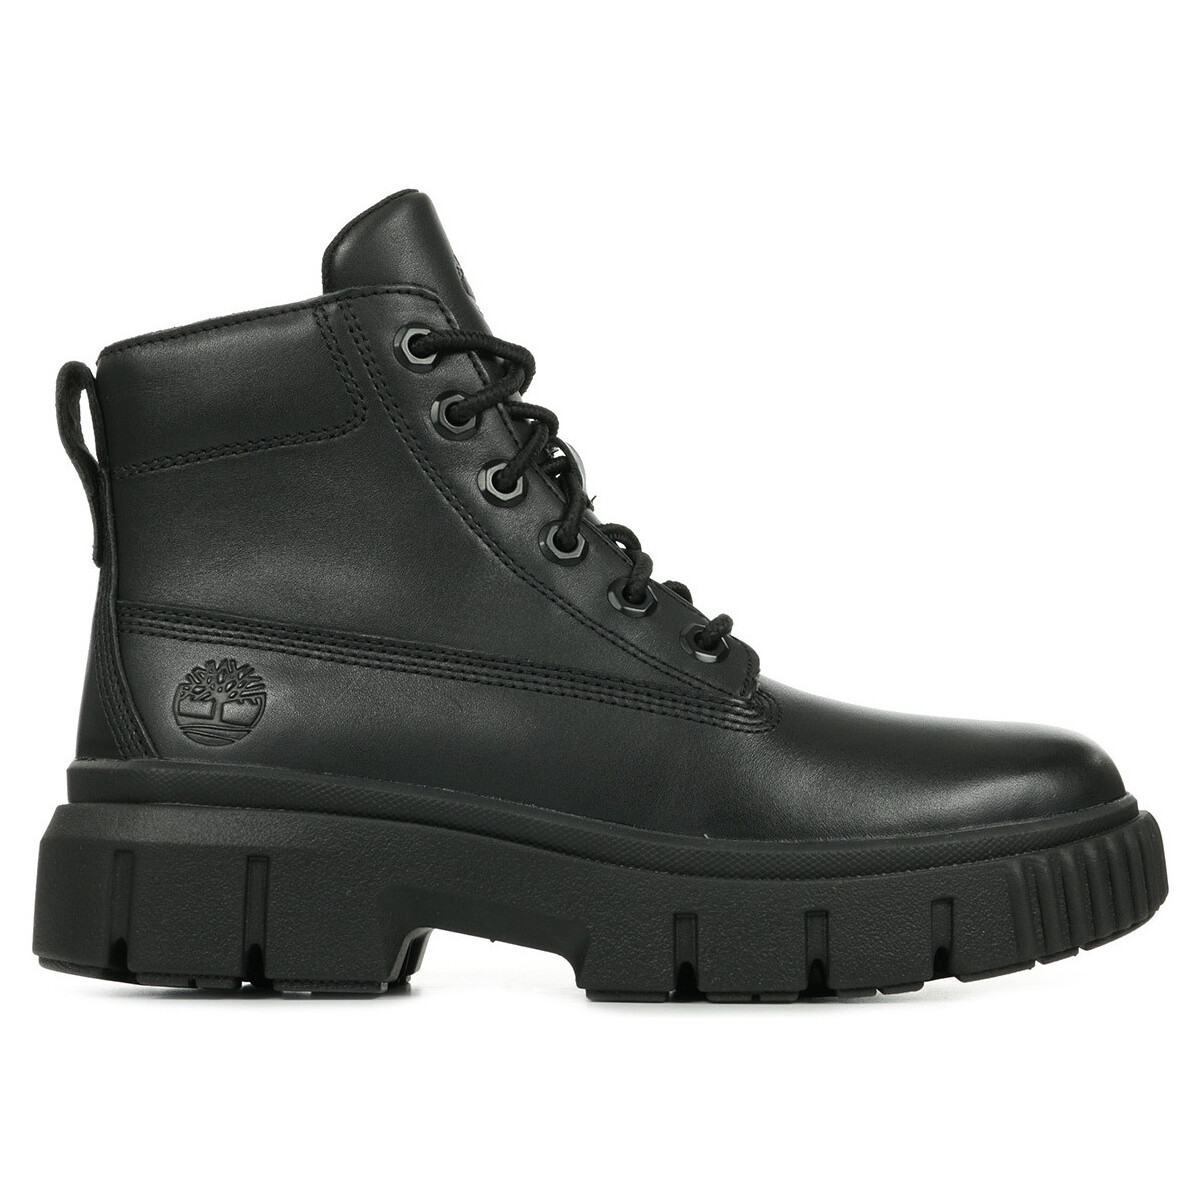 Schoenen Dames Laarzen Timberland Greyfield Leather Boots Zwart